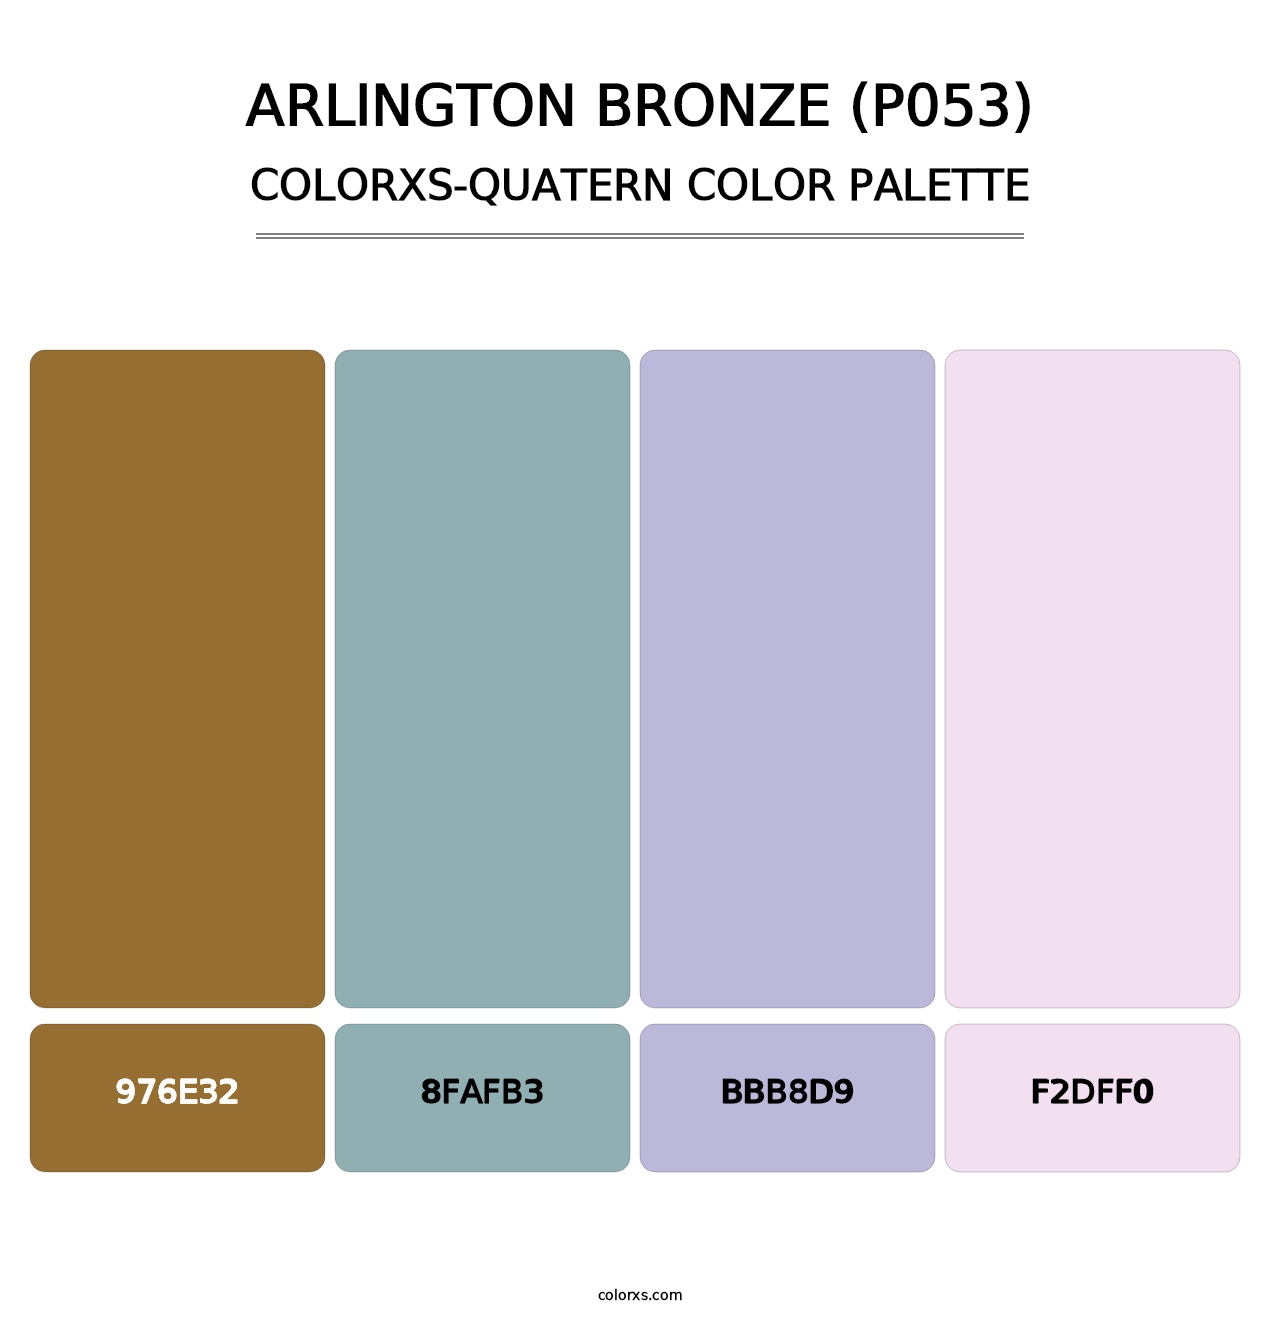 Arlington Bronze (P053) - Colorxs Quatern Palette